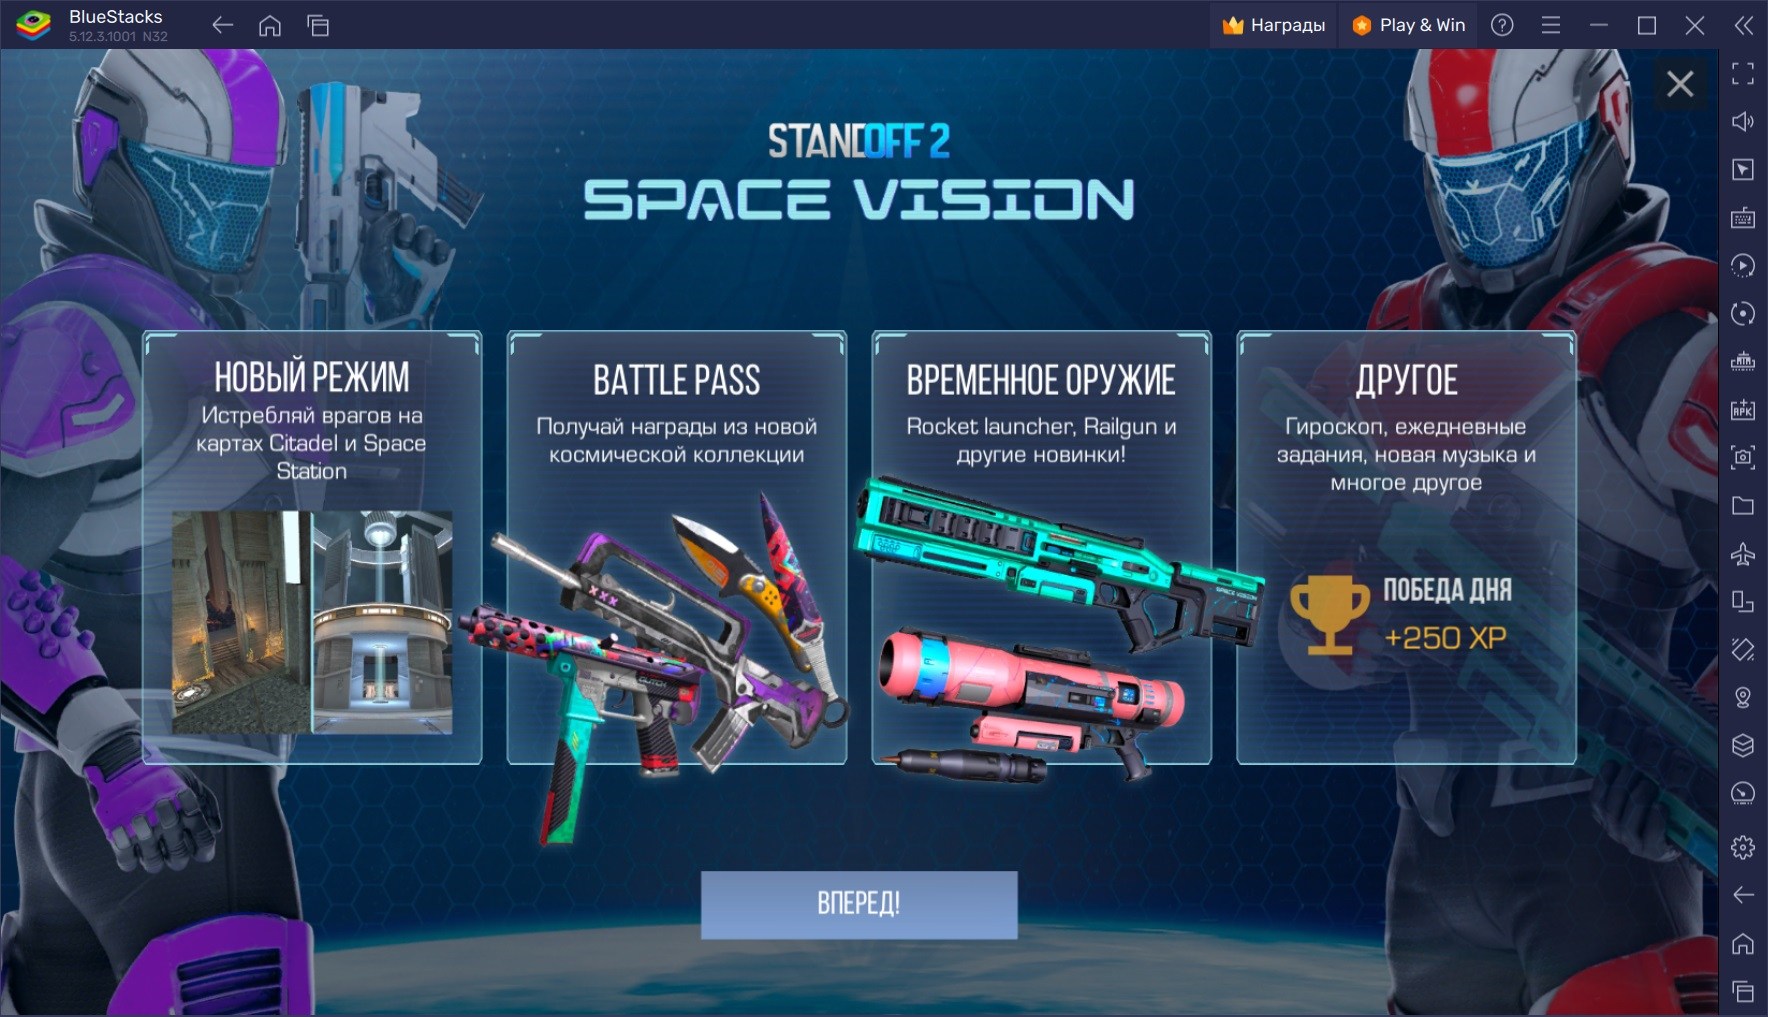 Обновление Space Vision для Standoff 2. Добавлены новые временные карты, специальное оружие, боевой пропуск и коллекция скинов